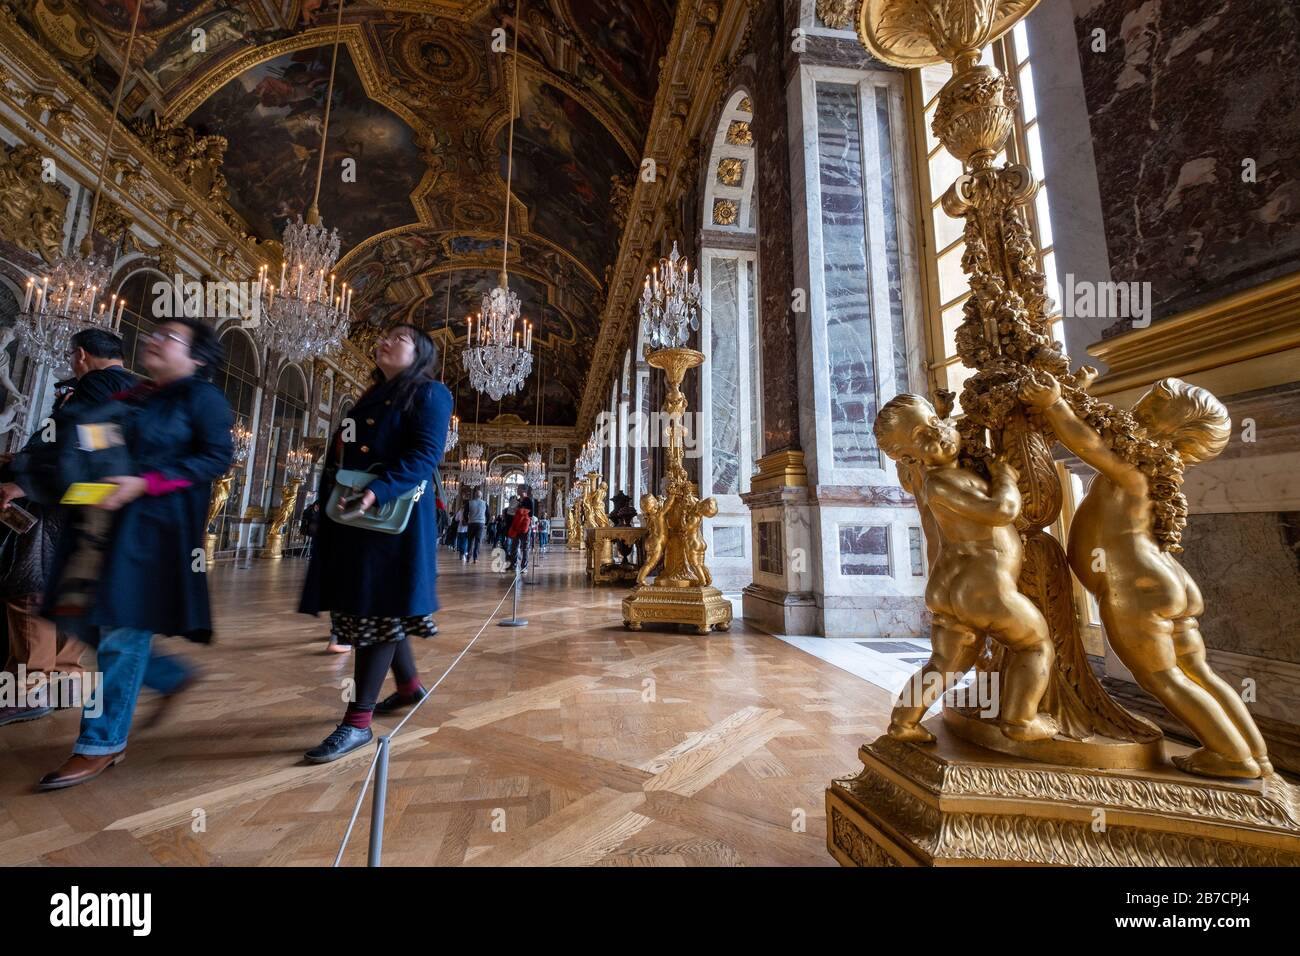 Dettaglio di sculture dorate ai piedi di un candelabro nella sala da ballo Hall of Mirrors del Palazzo di Versailles, alla periferia di Parigi, in Francia Foto Stock